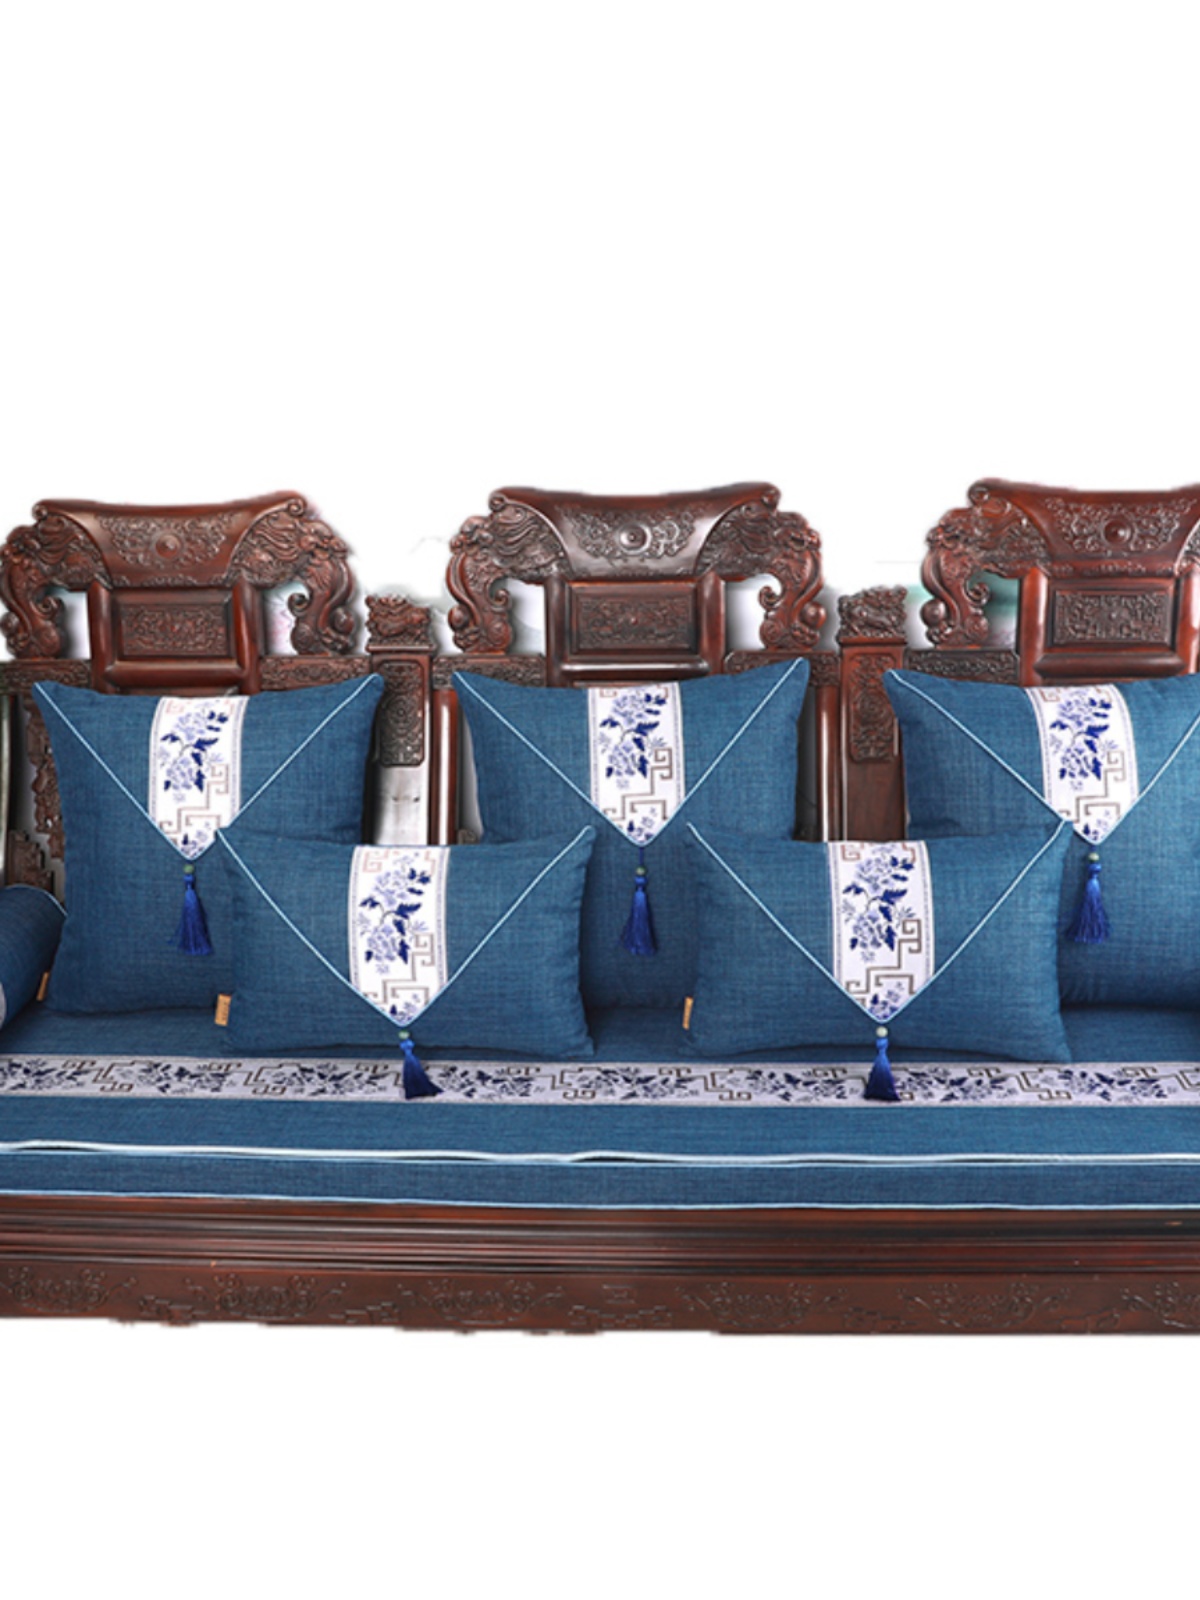 新中式实木沙发垫四季通用高档沙发套罩红木全盖巾沙发盖布可定制